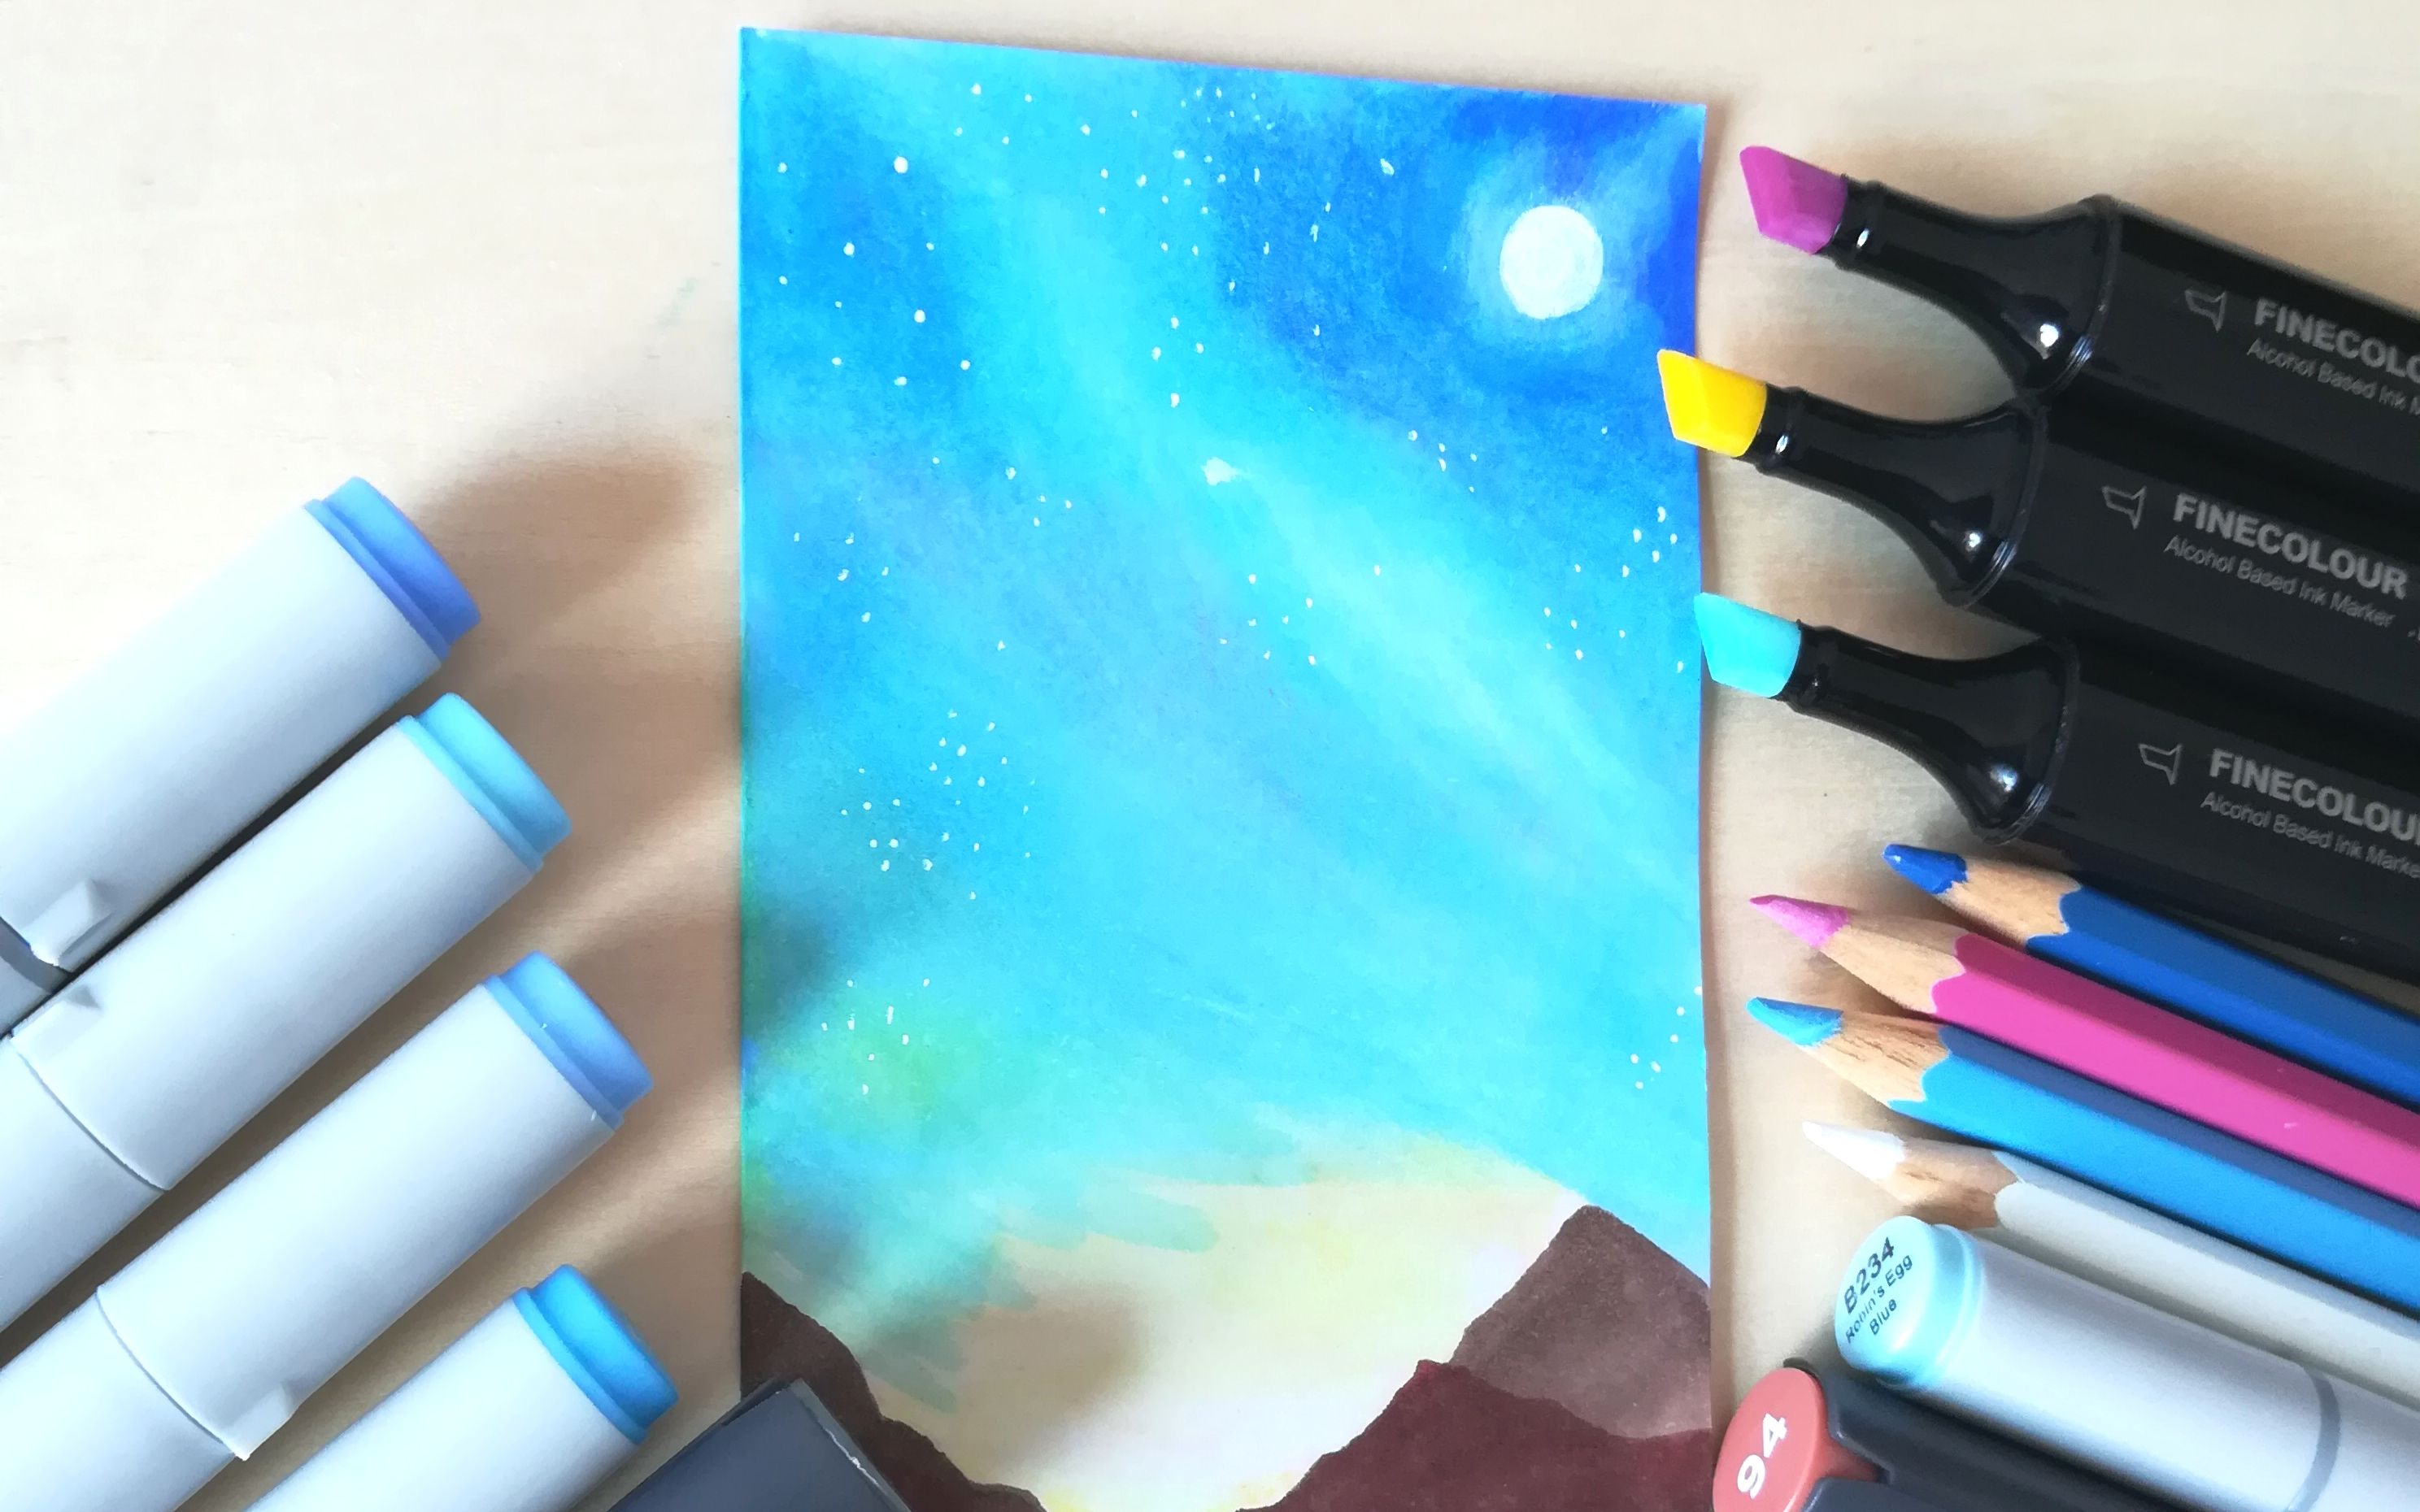 【马克笔星空】用硬头马克笔和彩铅画一张简单的星空书签